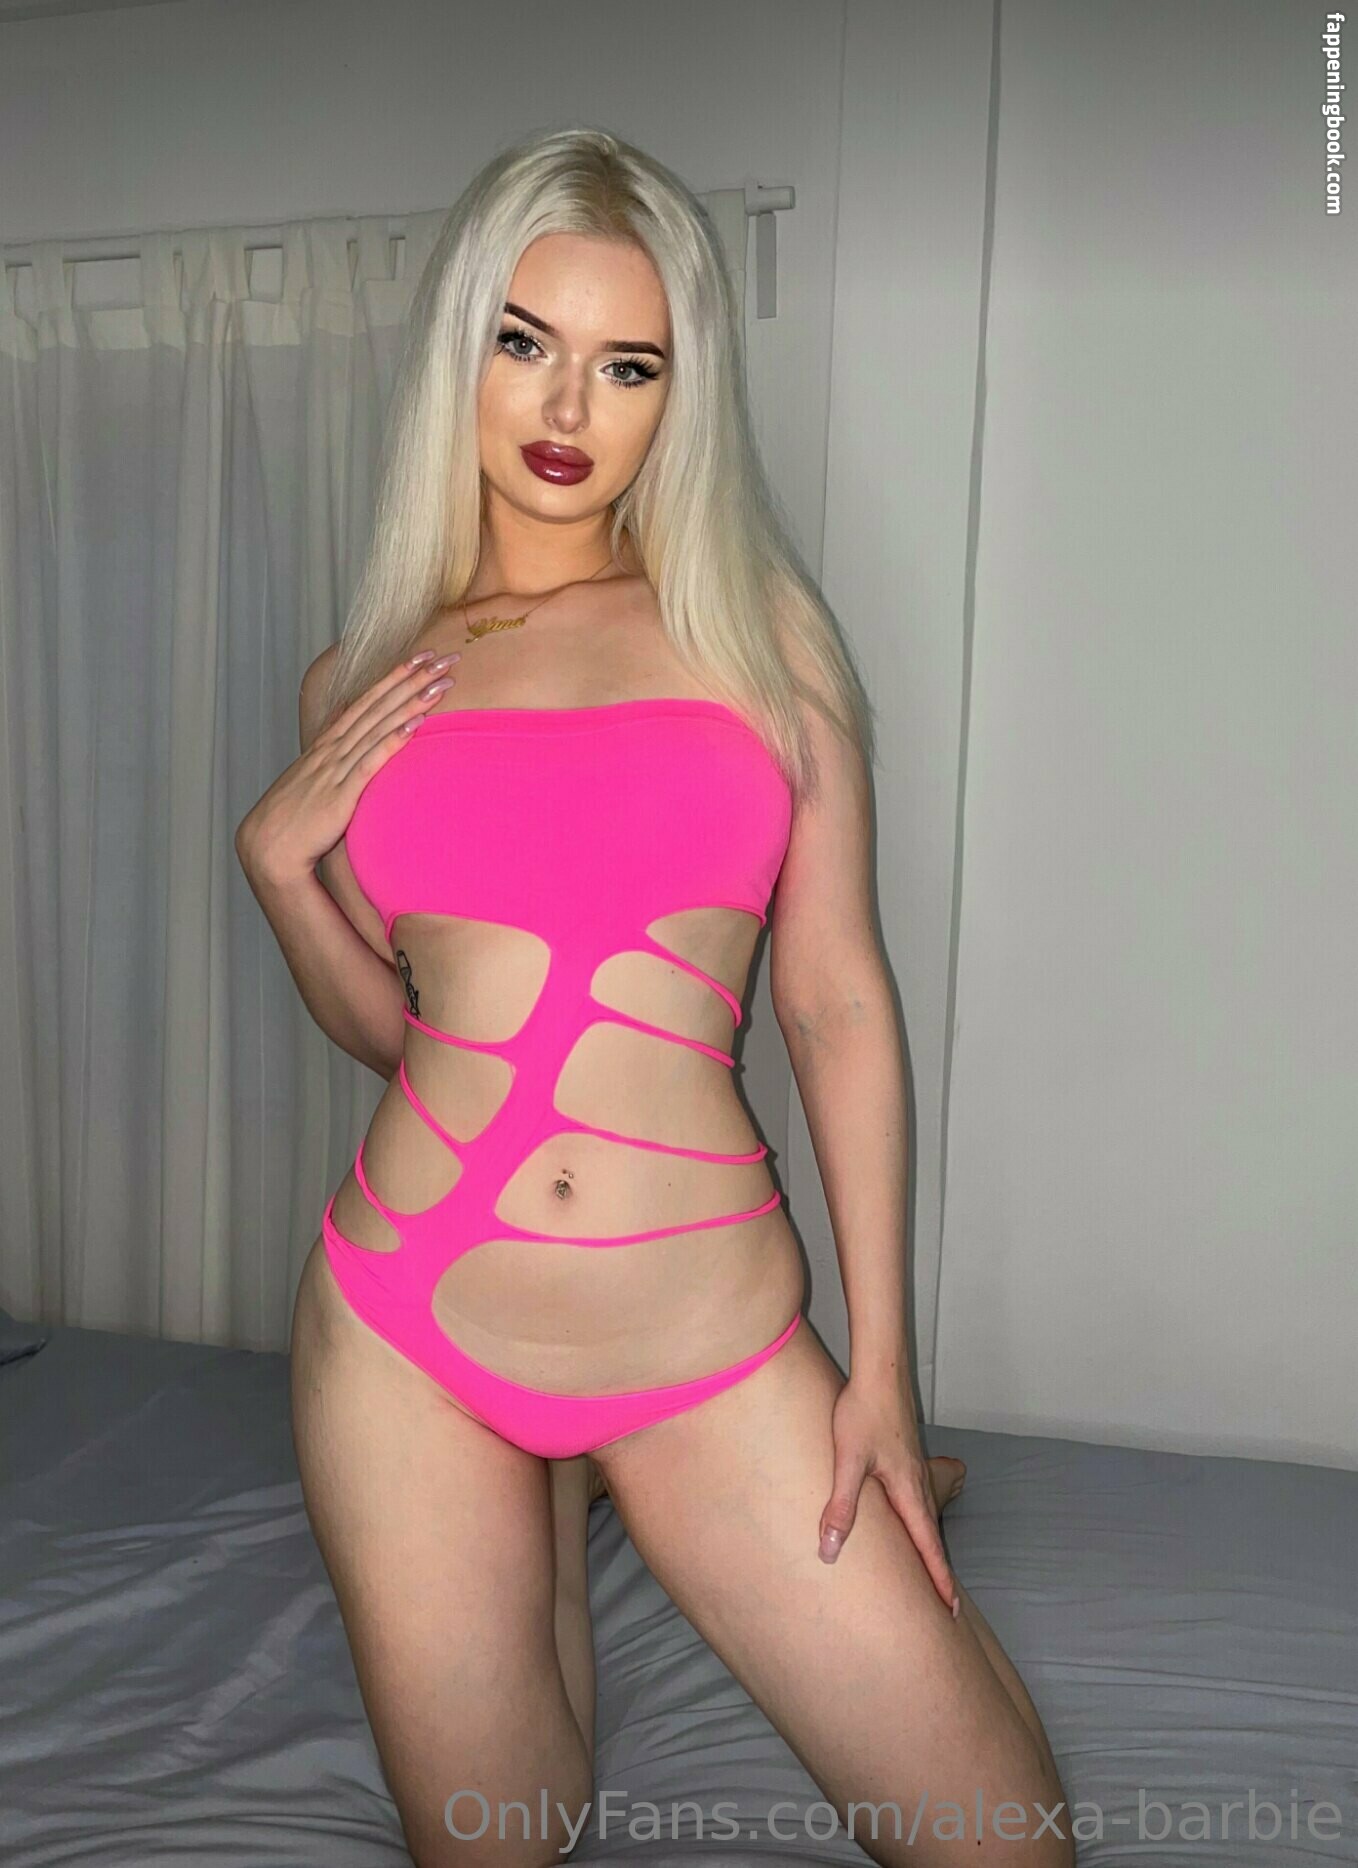 alexa-barbie Nude OnlyFans Leaks